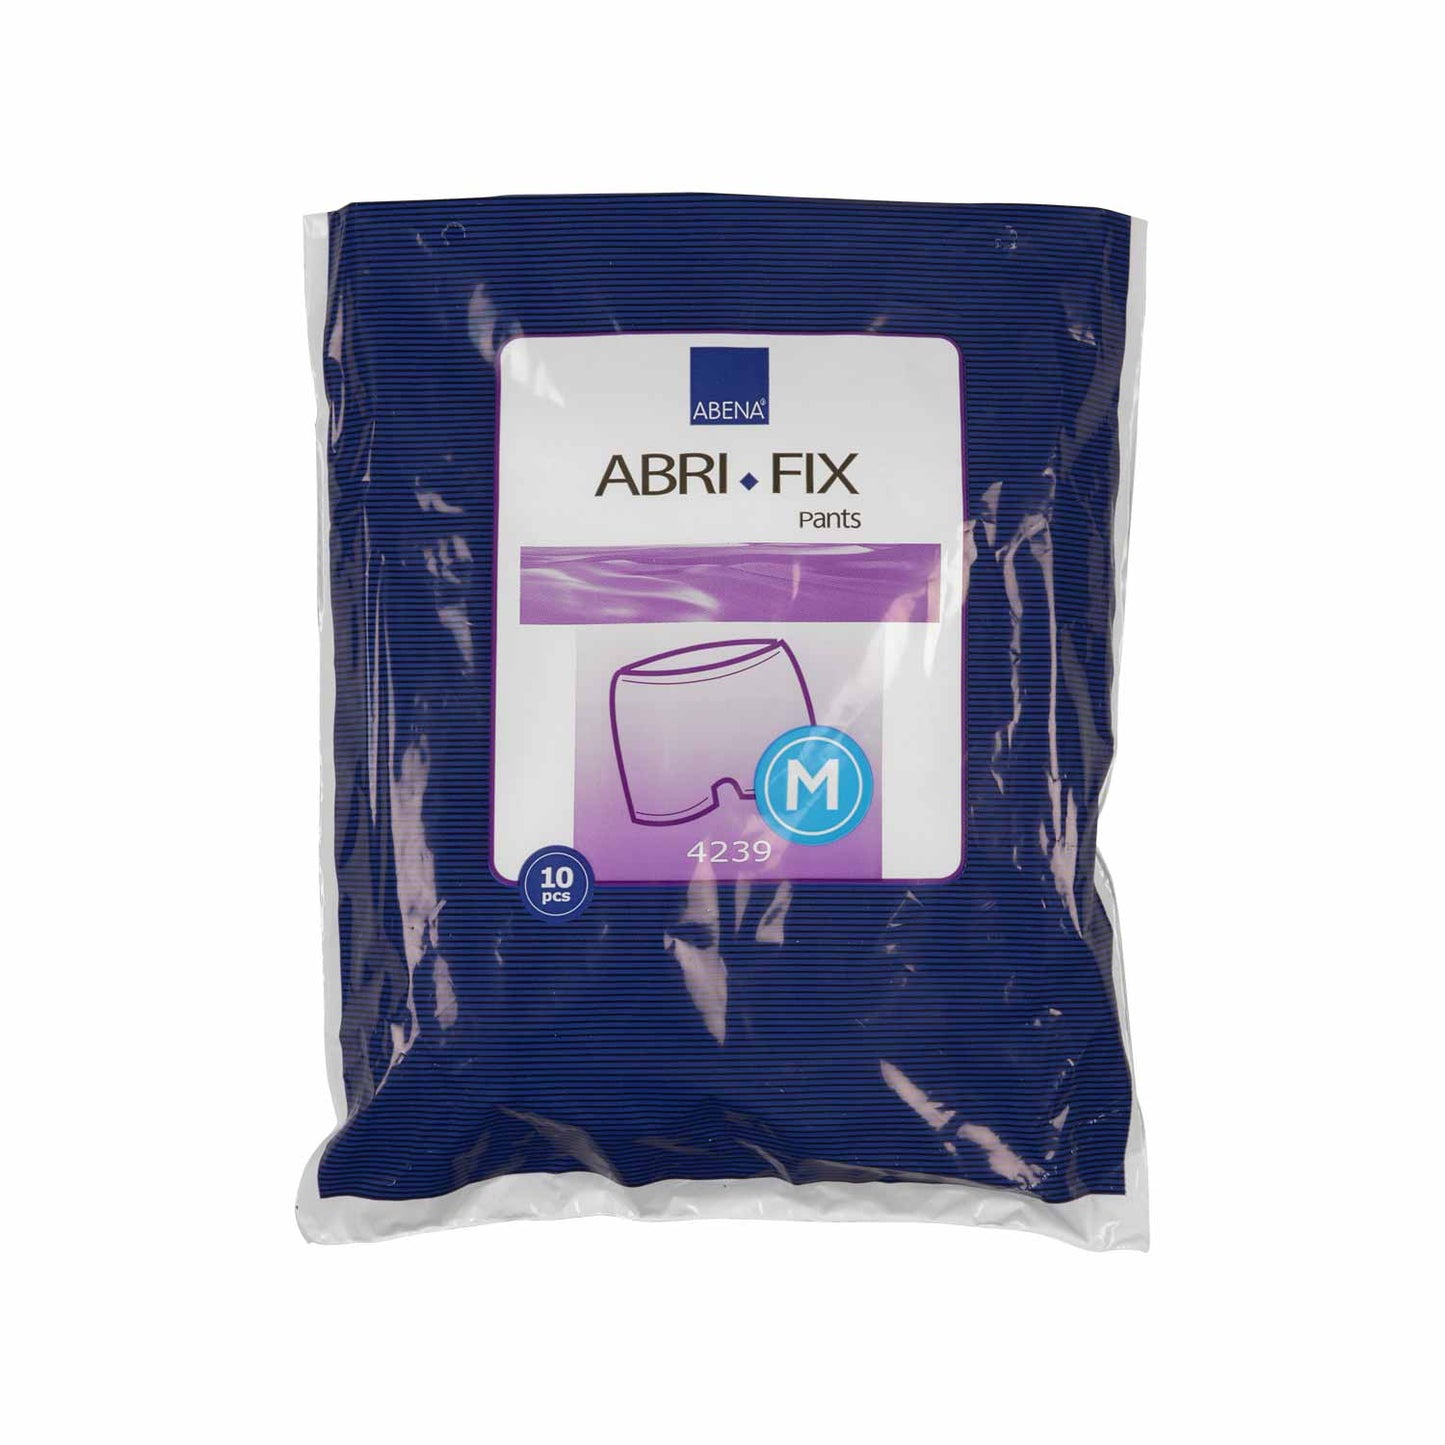 Abena Abri-Fix Pants - PK of 10